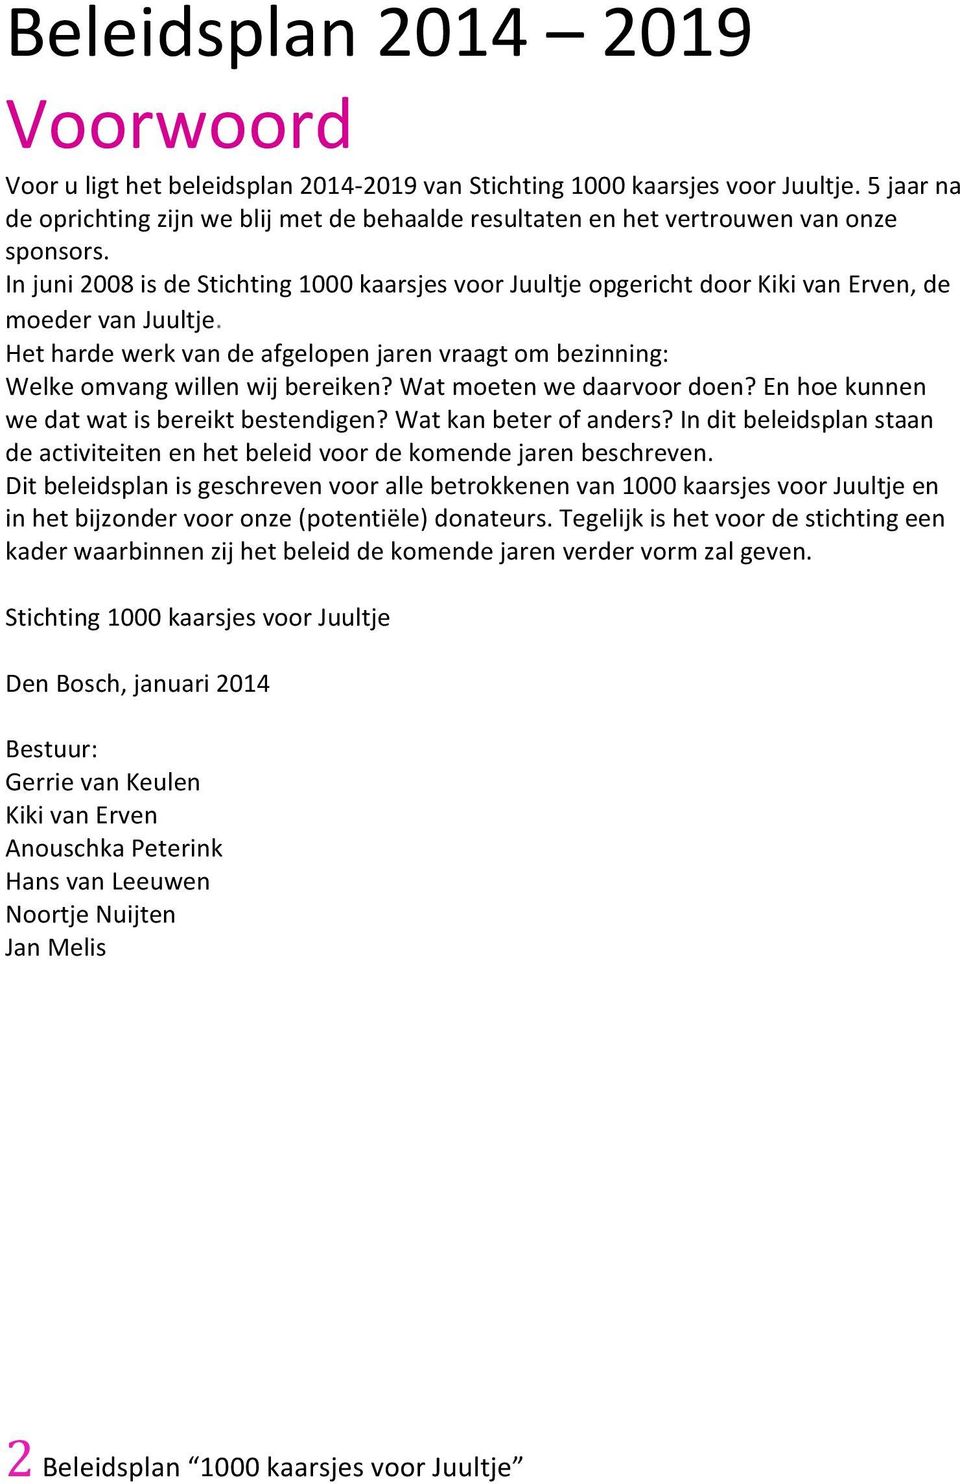 In juni 2008 is de Stichting 1000 kaarsjes voor Juultje opgericht door Kiki van Erven, de moeder van Juultje.